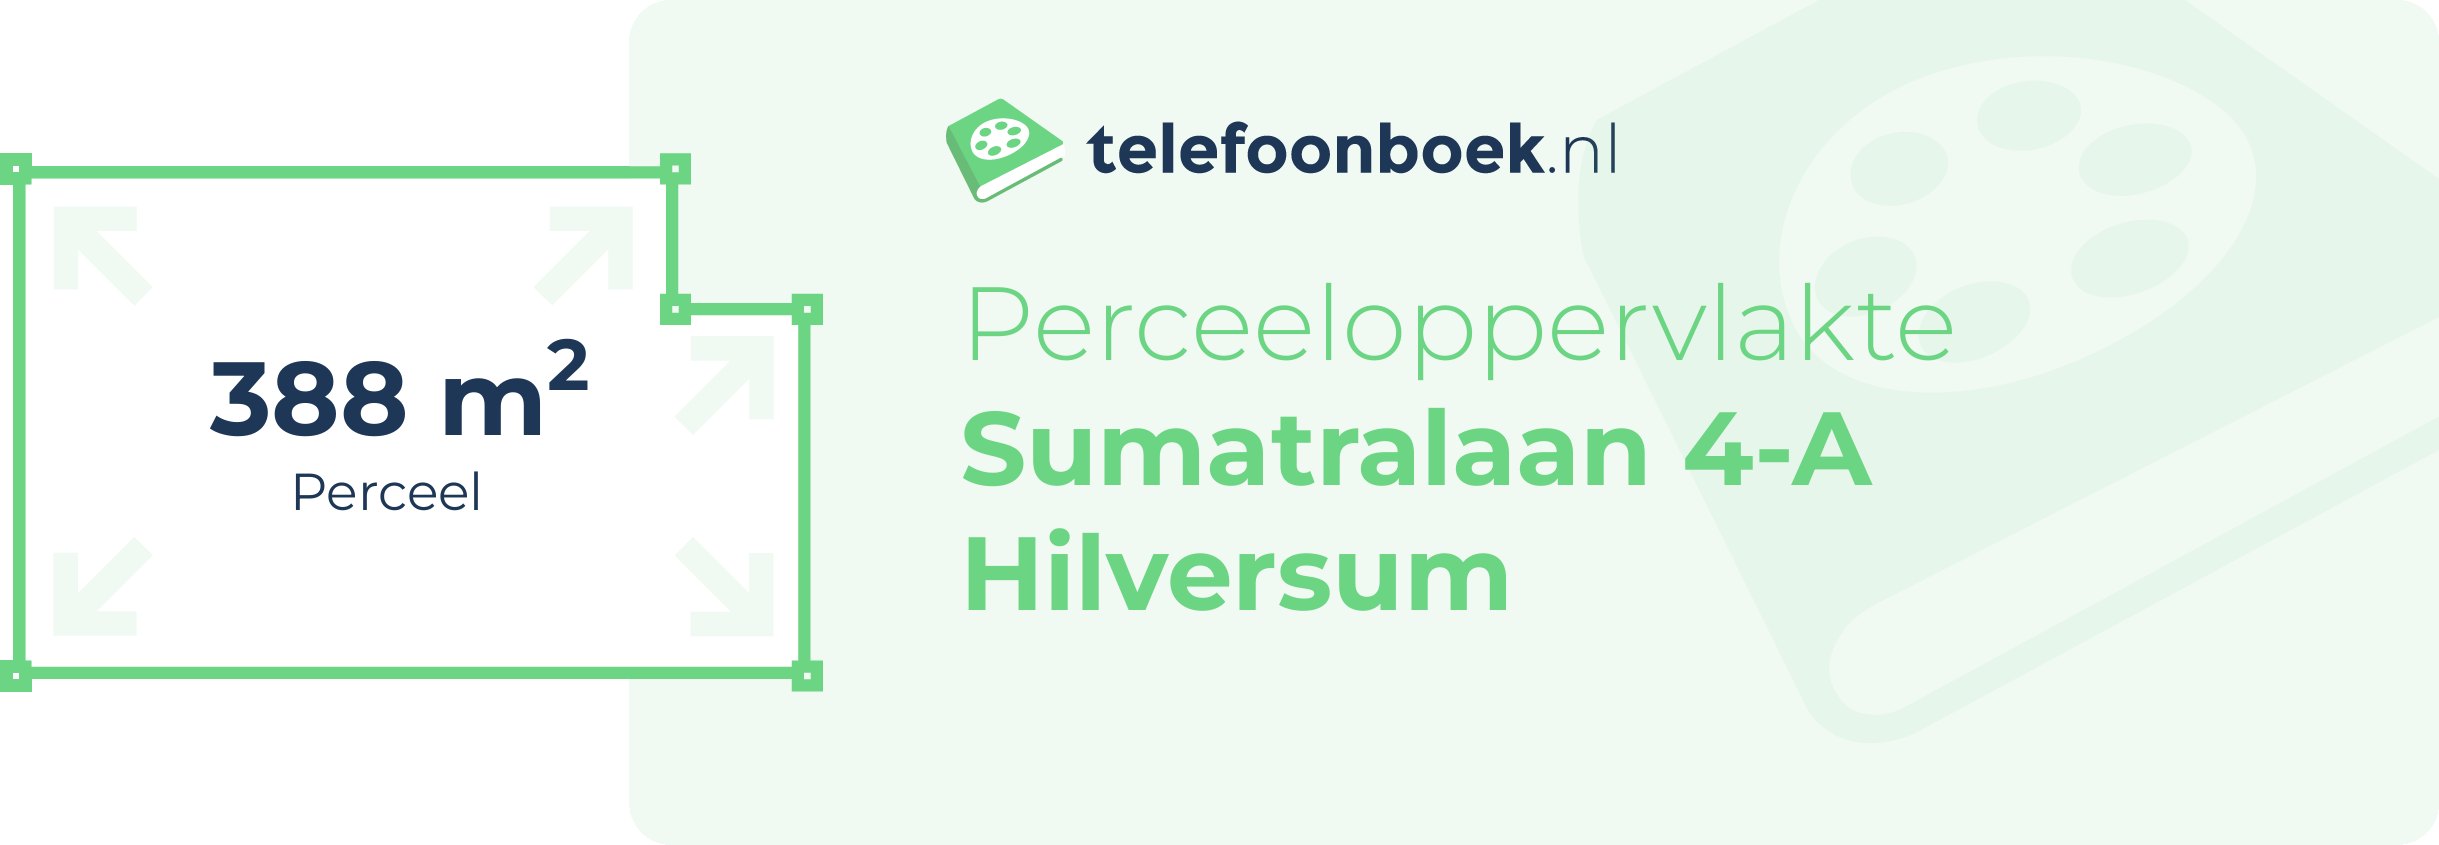 Perceeloppervlakte Sumatralaan 4-A Hilversum